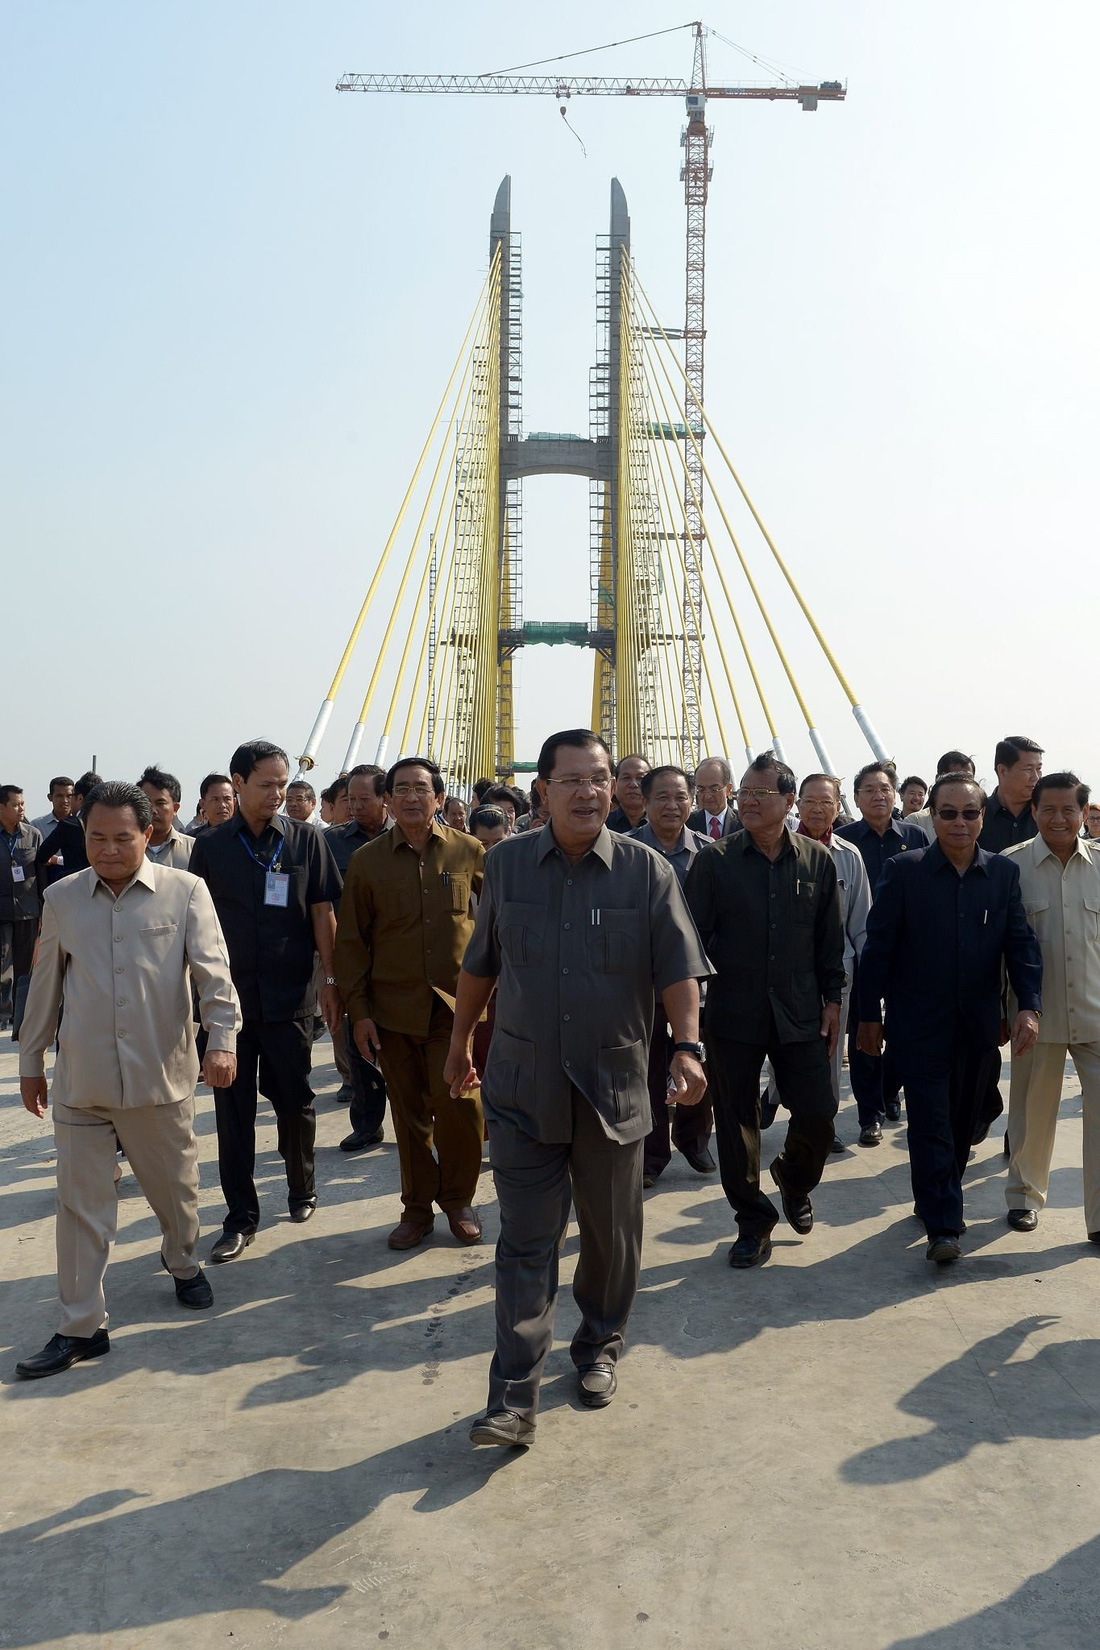 Trong thời gian ông Hun Sen lãnh đạo đất nước, Campuchia đã chứng kiến nhiều sự thay đổi lớn. Xứ chùa tháp thay da đổi thịt với các công trình giao thông quan trọng. Trong ảnh: Thủ tướng Hun Sen trong ngày hợp long cầu Neak Loeung bắc qua sông Mekong vào tháng 1-2014 - Ảnh: Getty